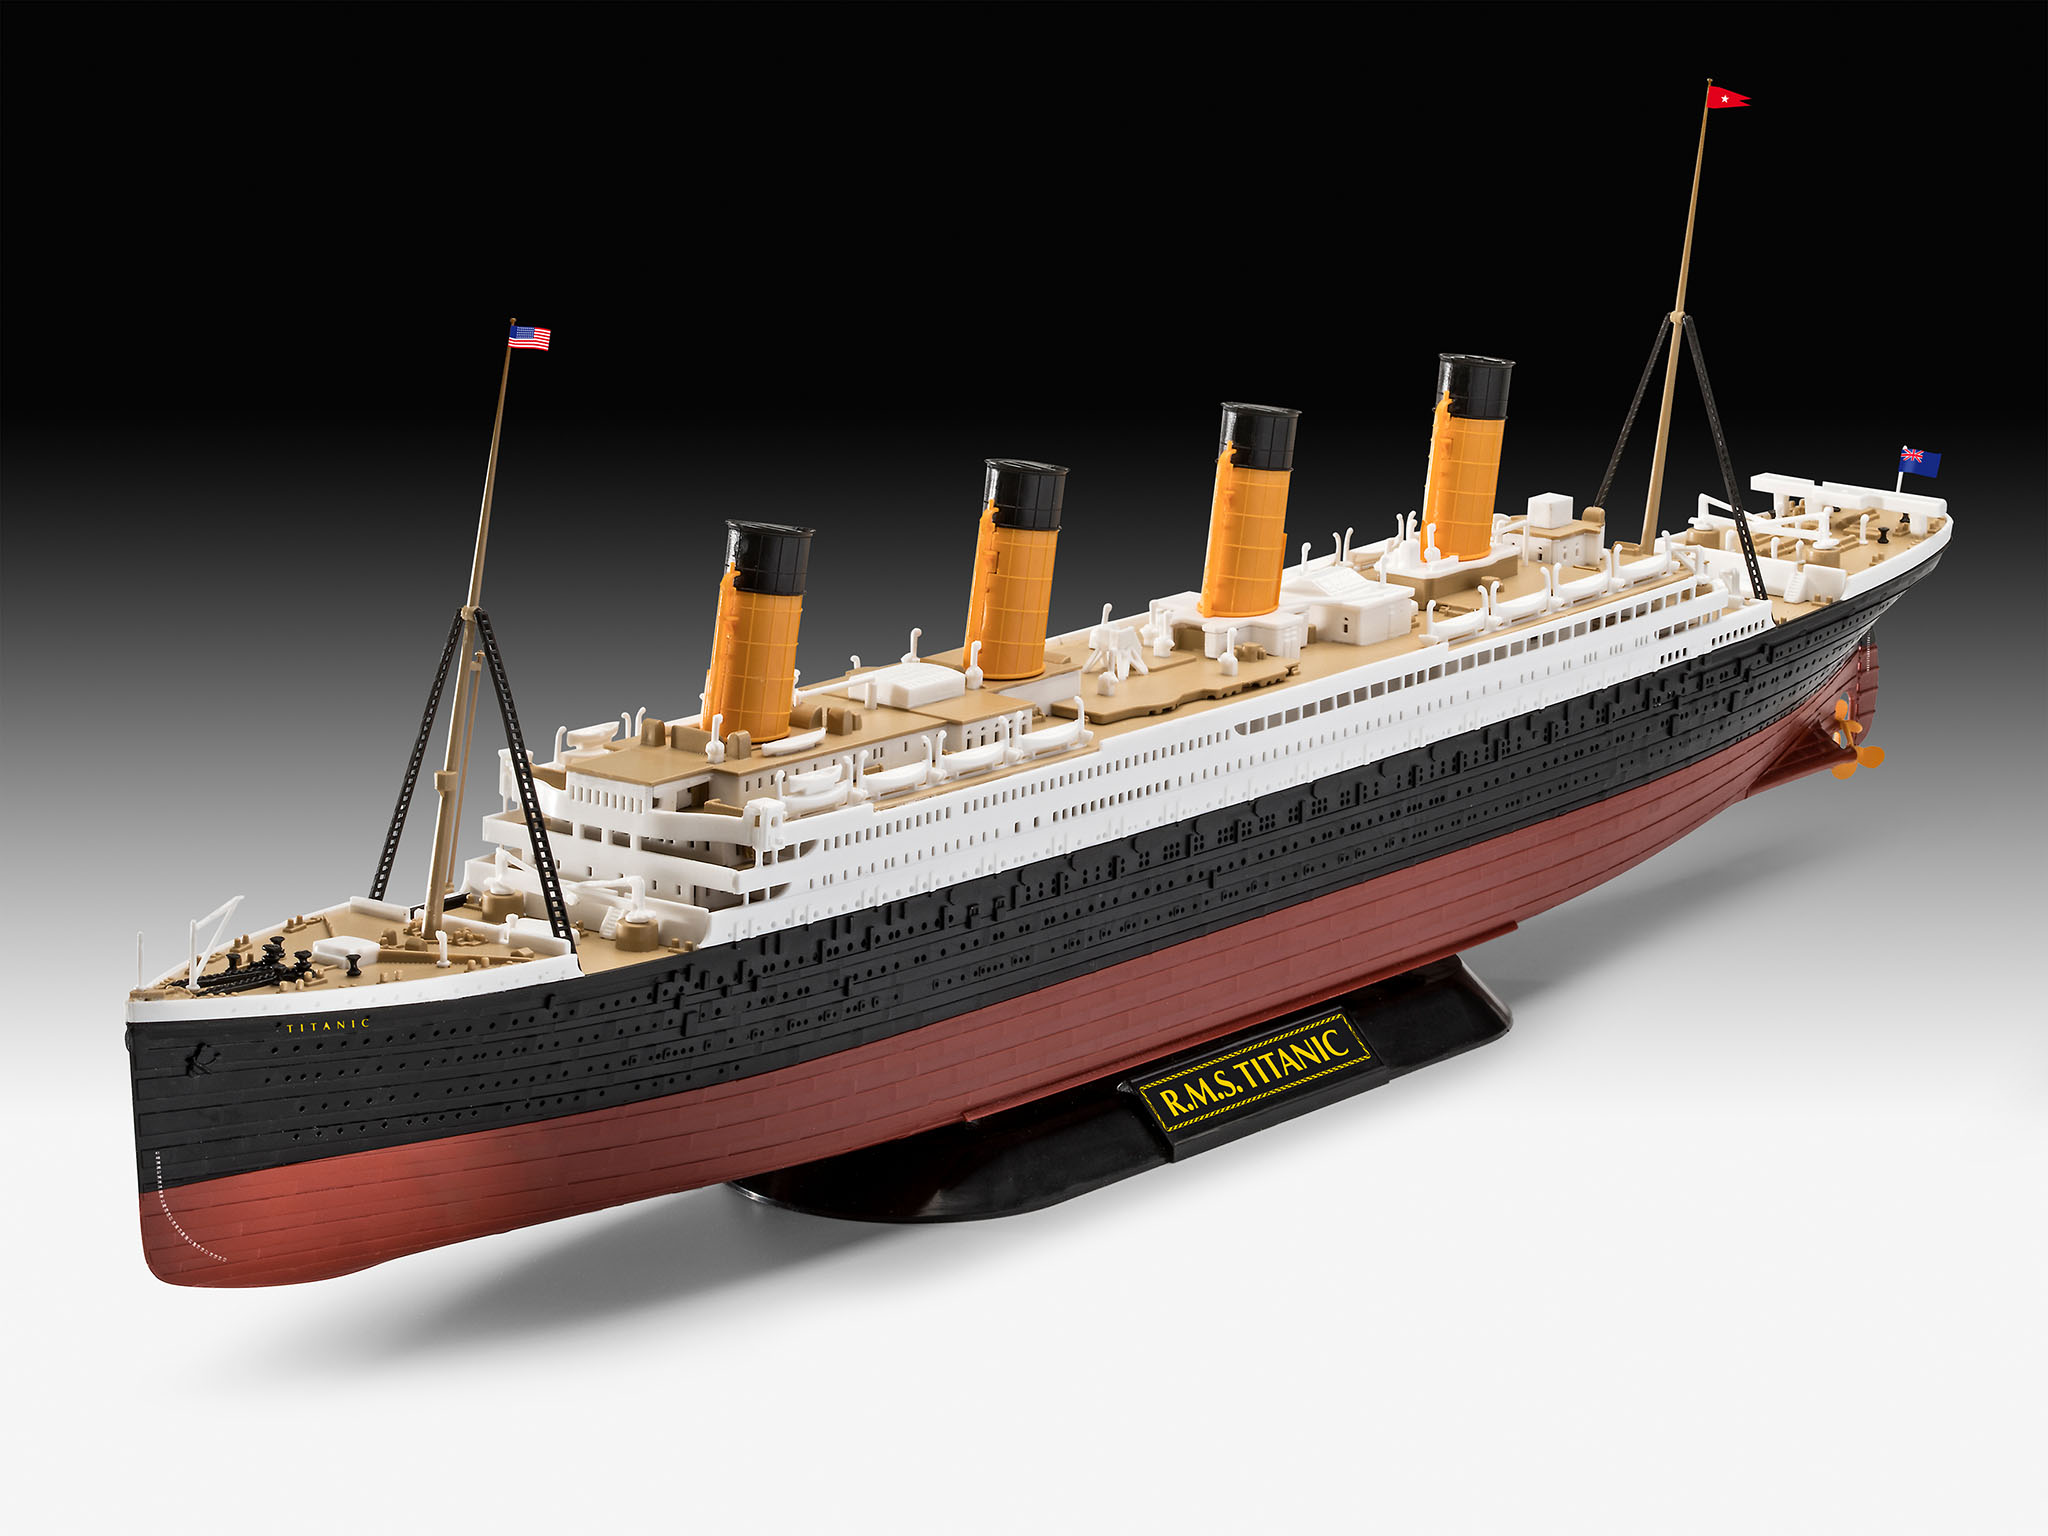   Revell   RMS TITANIC   1:600. # 1 hobbyplus.ru